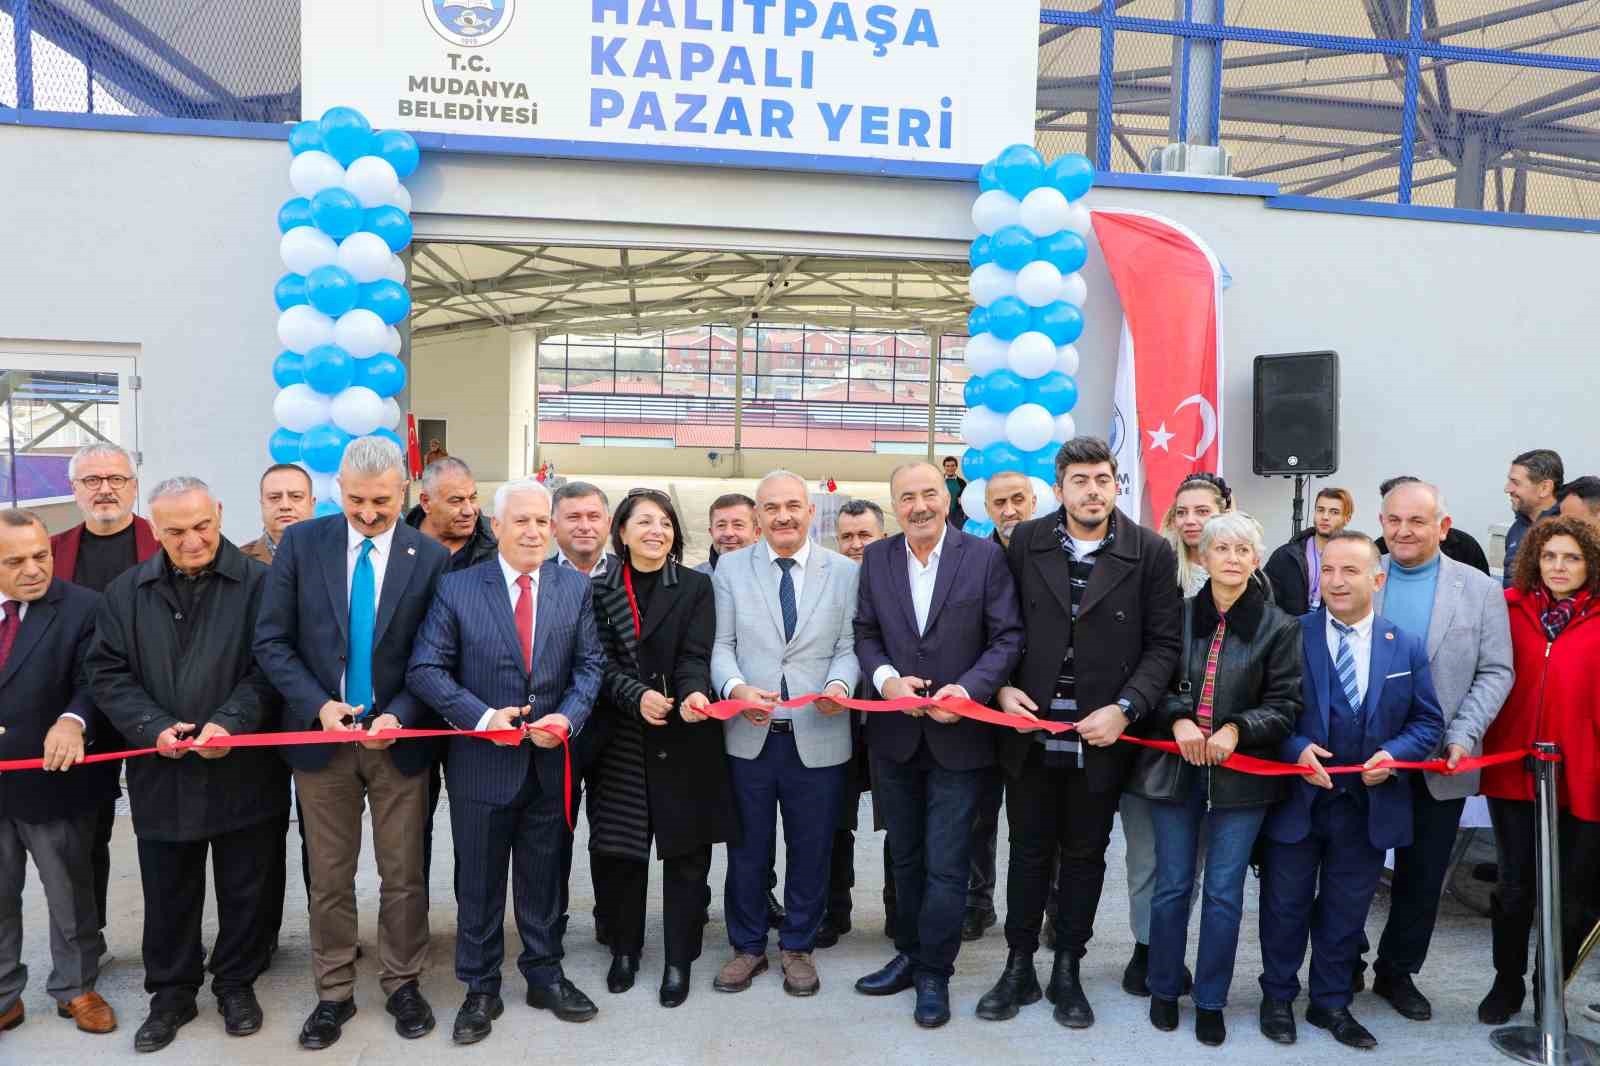 Mudanya Belediyesi Kapalı Pazar Yeri Açıldı